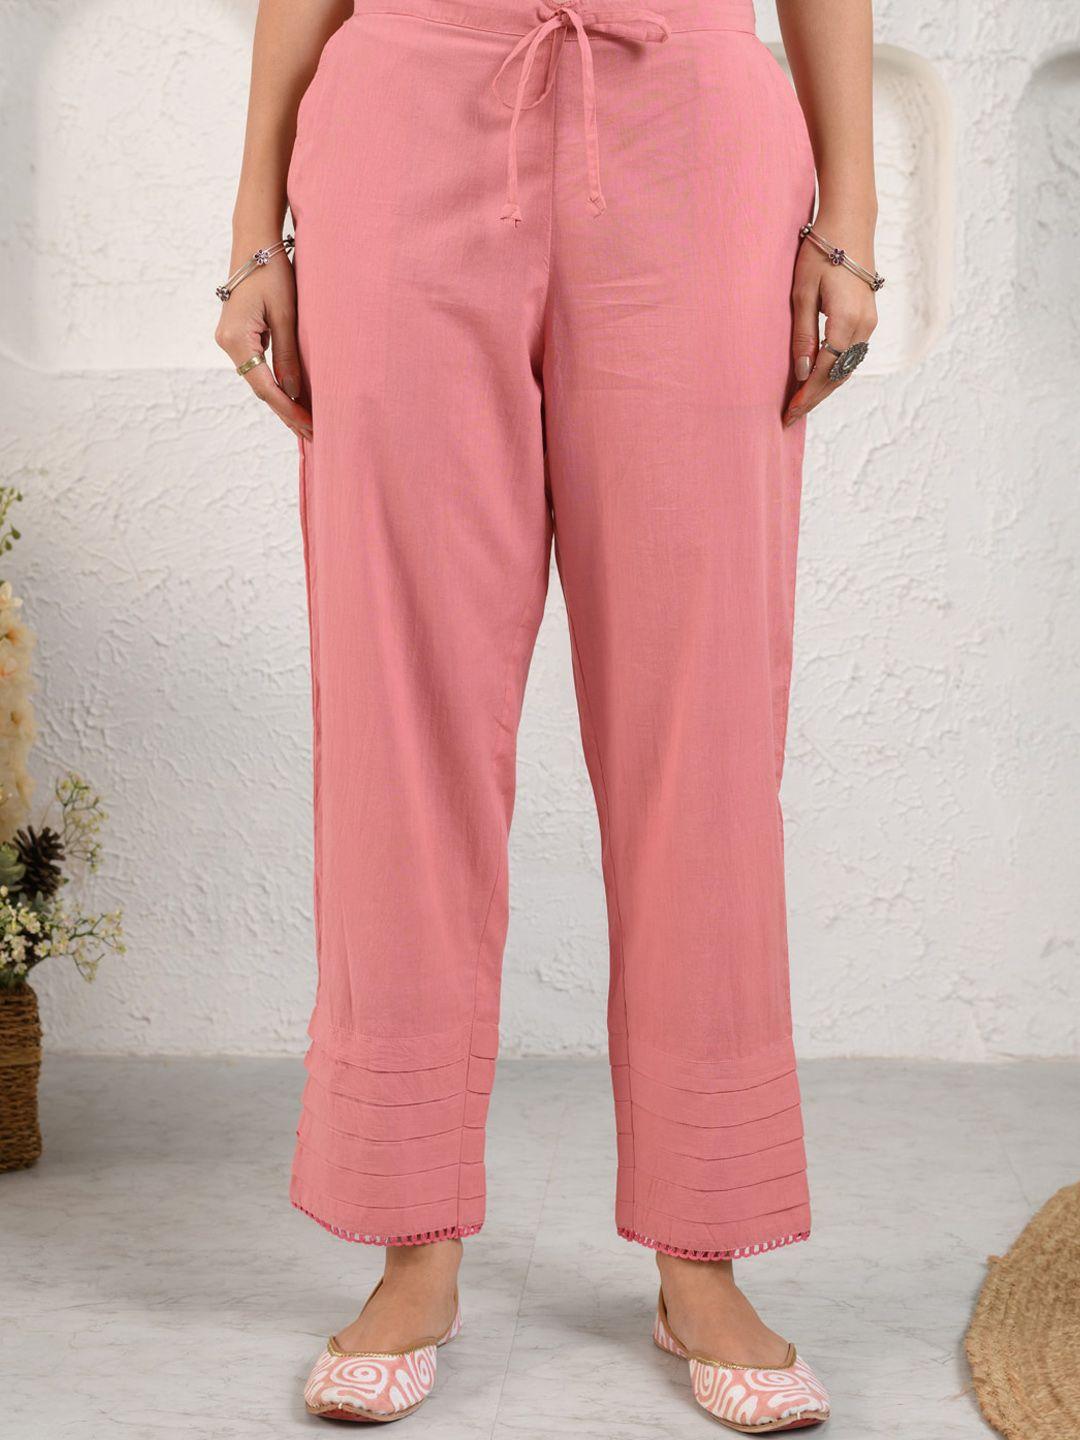 prakriti-jaipur-women-mid-rise-lace-cotton-ethnic-trouser